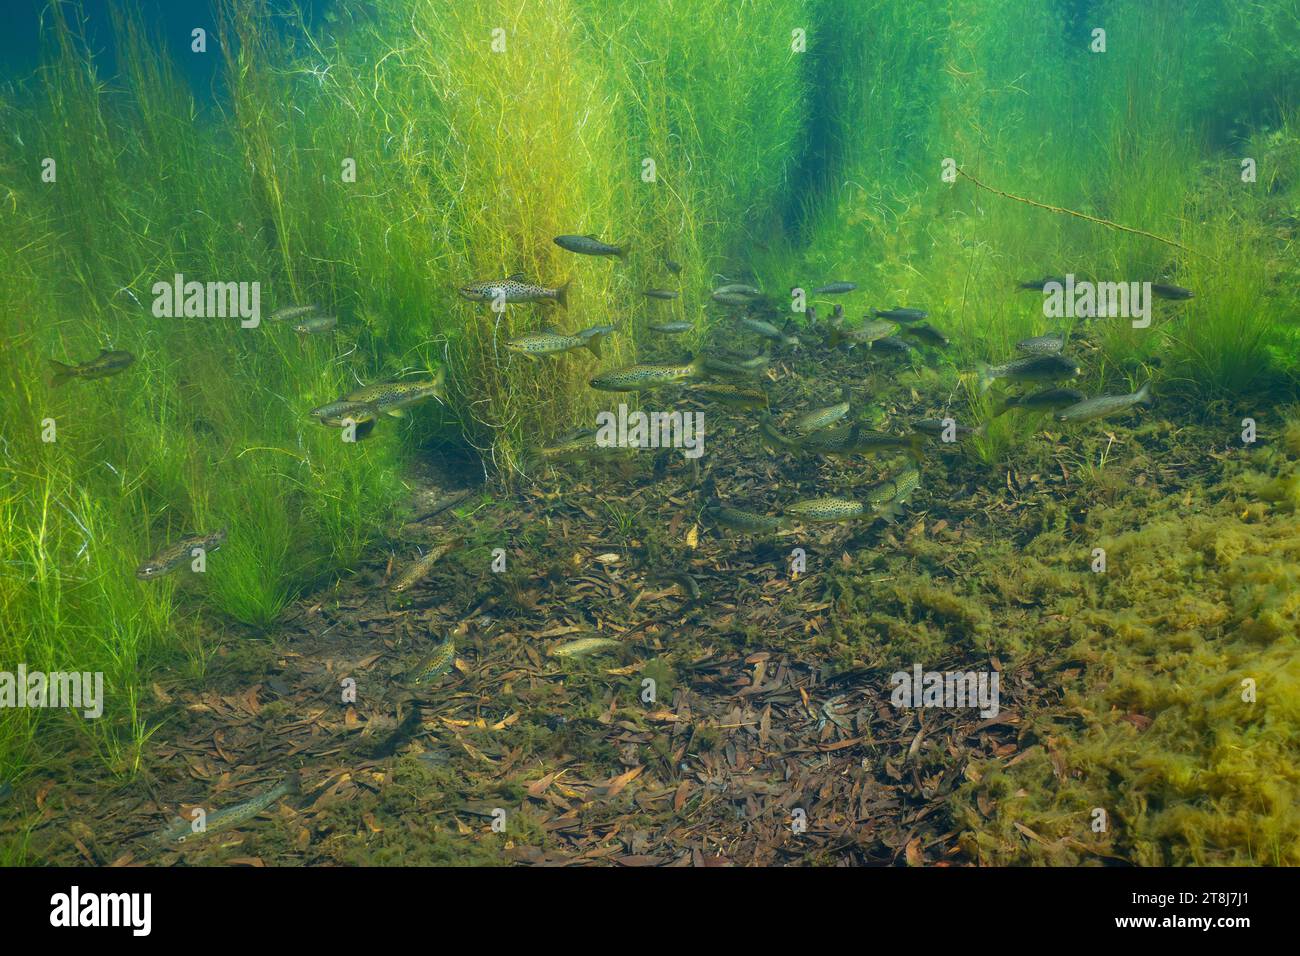 Un banc de poissons de truite de rivière sous l'eau (truite brune, Salmo trutta), scène naturelle, Espagne, Galice, province de Pontevedra, rivière Tamuxe Banque D'Images